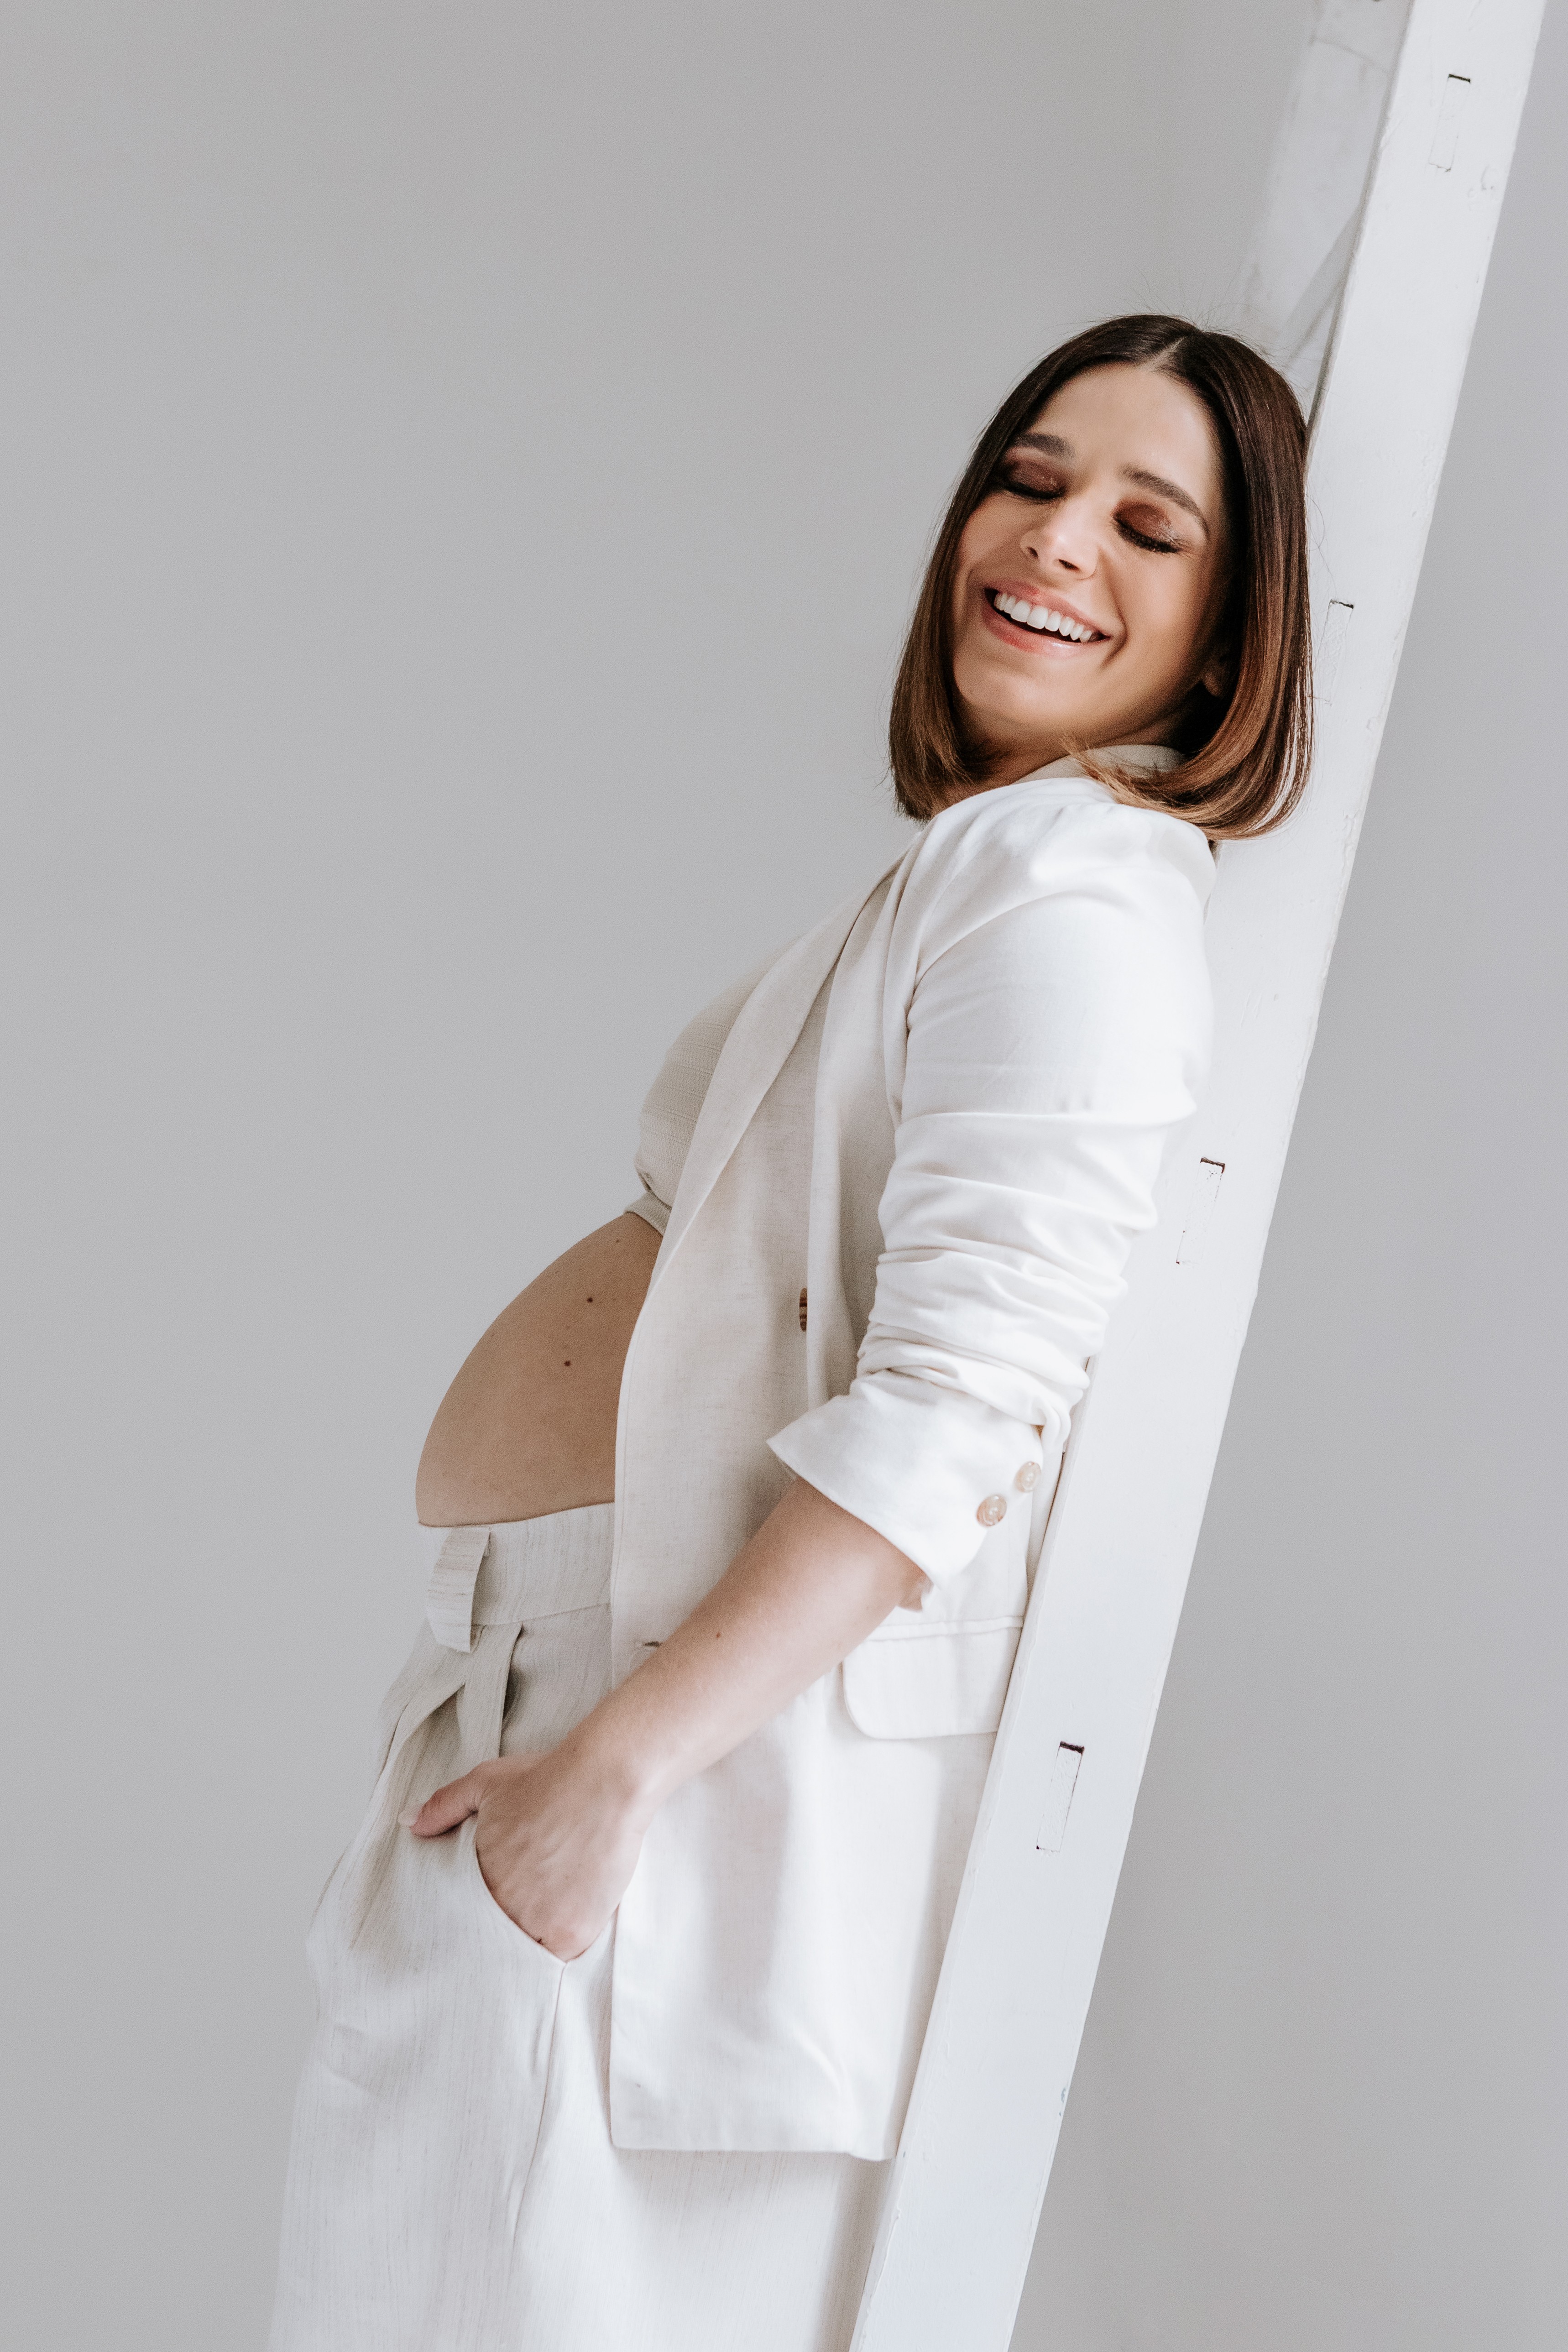 Sabrina Petraglia está à espera de seu terceiro filho (Foto: Babuska / Divulgação)